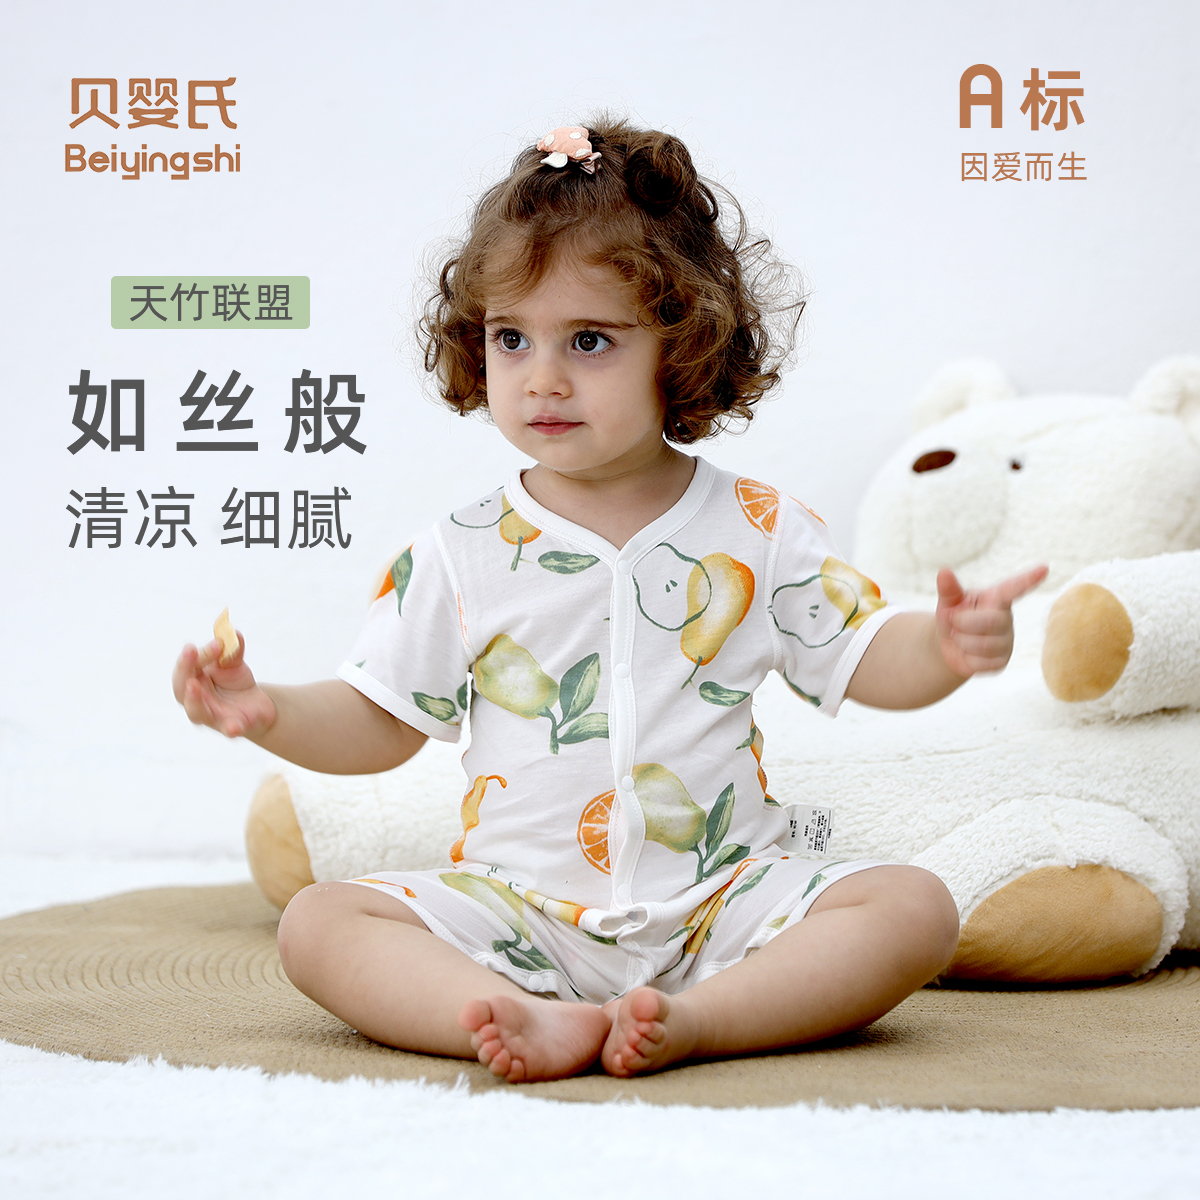 [竹纤维抗菌]贝婴氏婴儿衣服夏季薄款新生儿短袖连体衣宝宝空调服